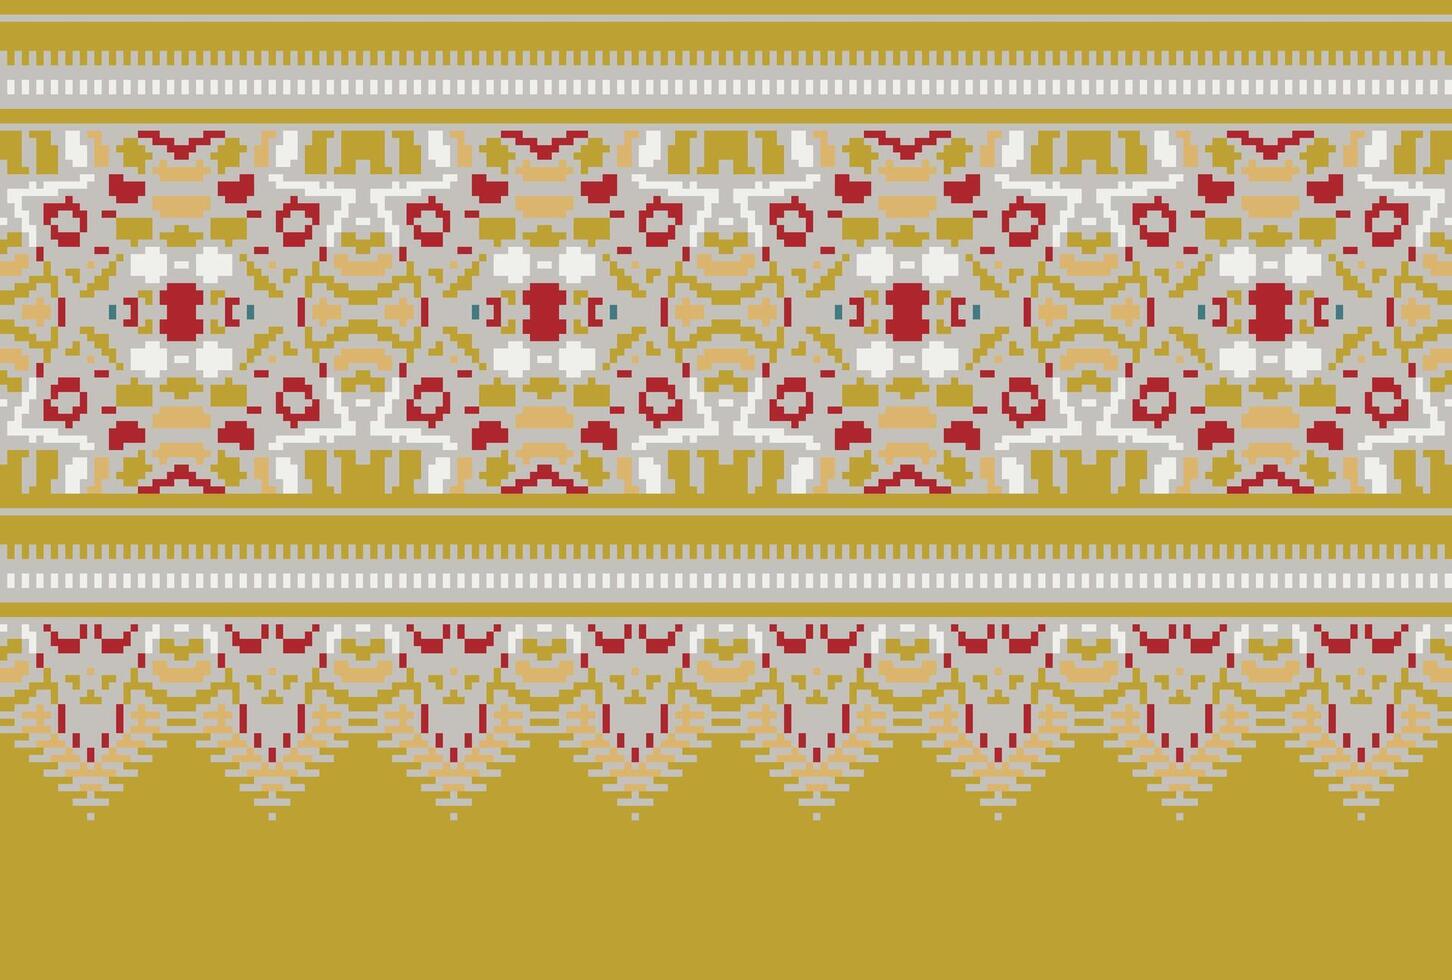 pixel Cruz ponto padronizar com floral projetos. tradicional Cruz ponto bordado. geométrico étnico padrão, bordado, têxtil ornamentação, tecido, mão costurado padrão, cultural costura vetor